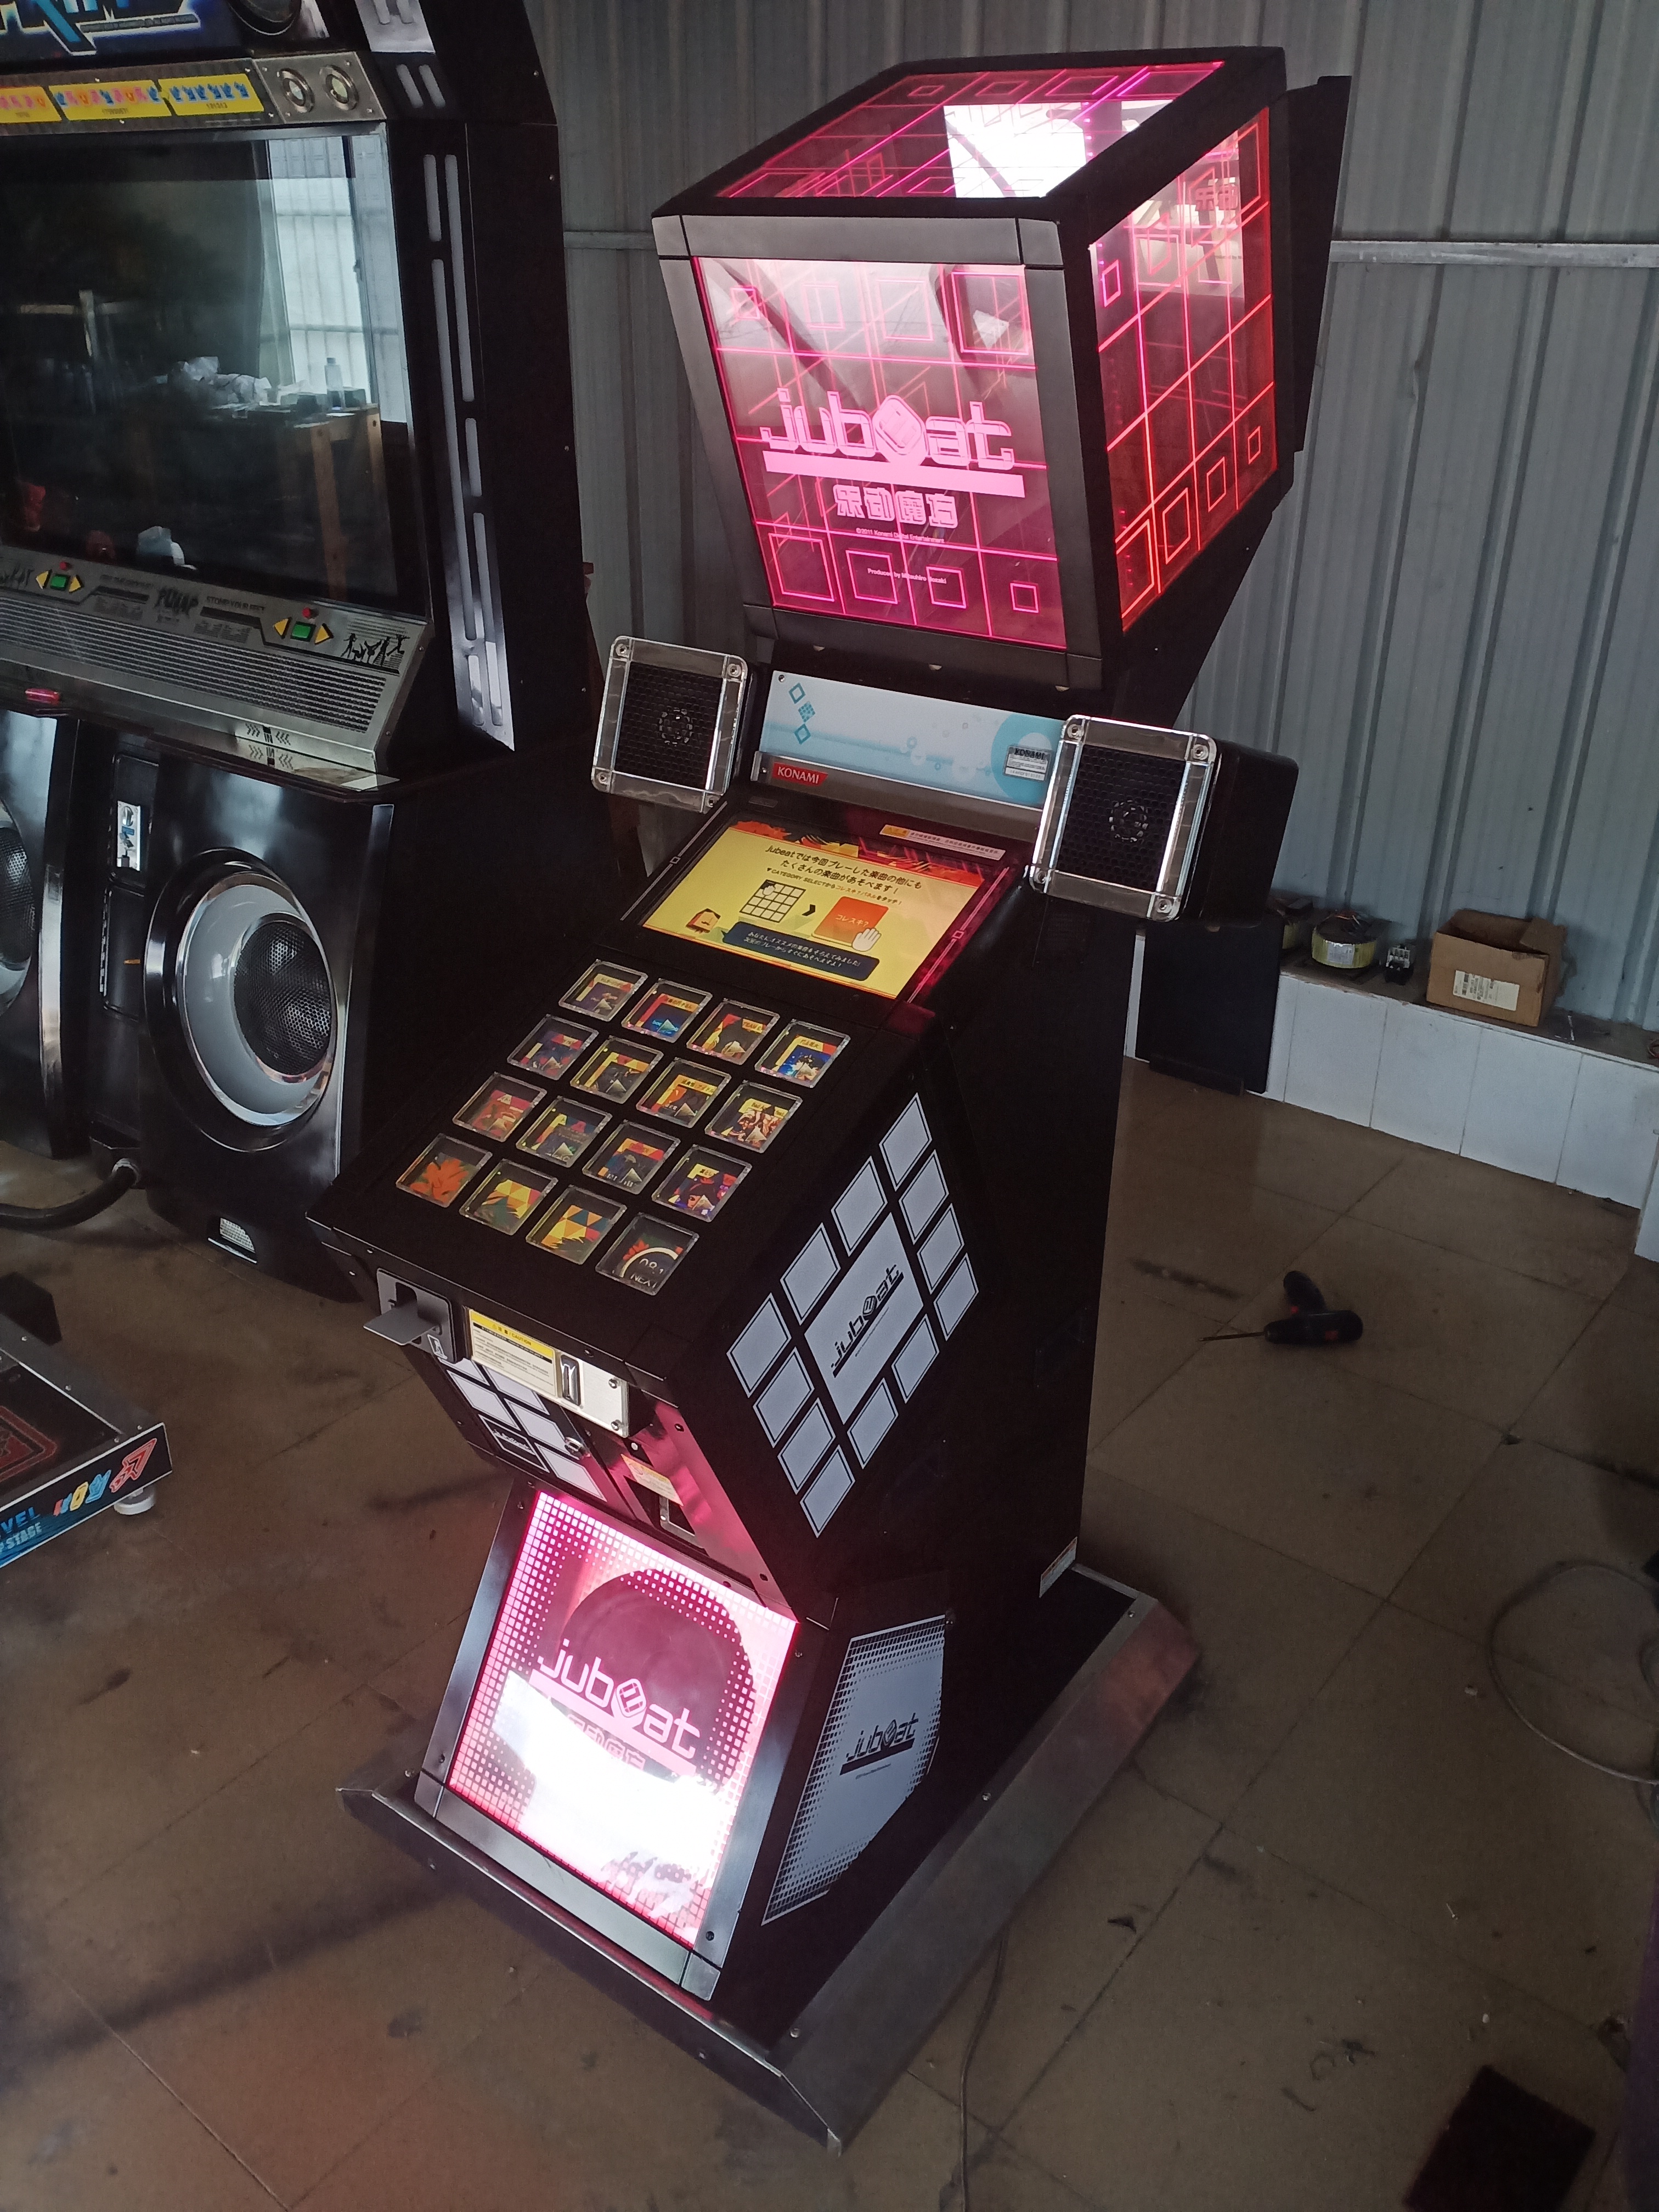 Buy Bemani Jubeat Konami Music Video Game-Tomy Arcade